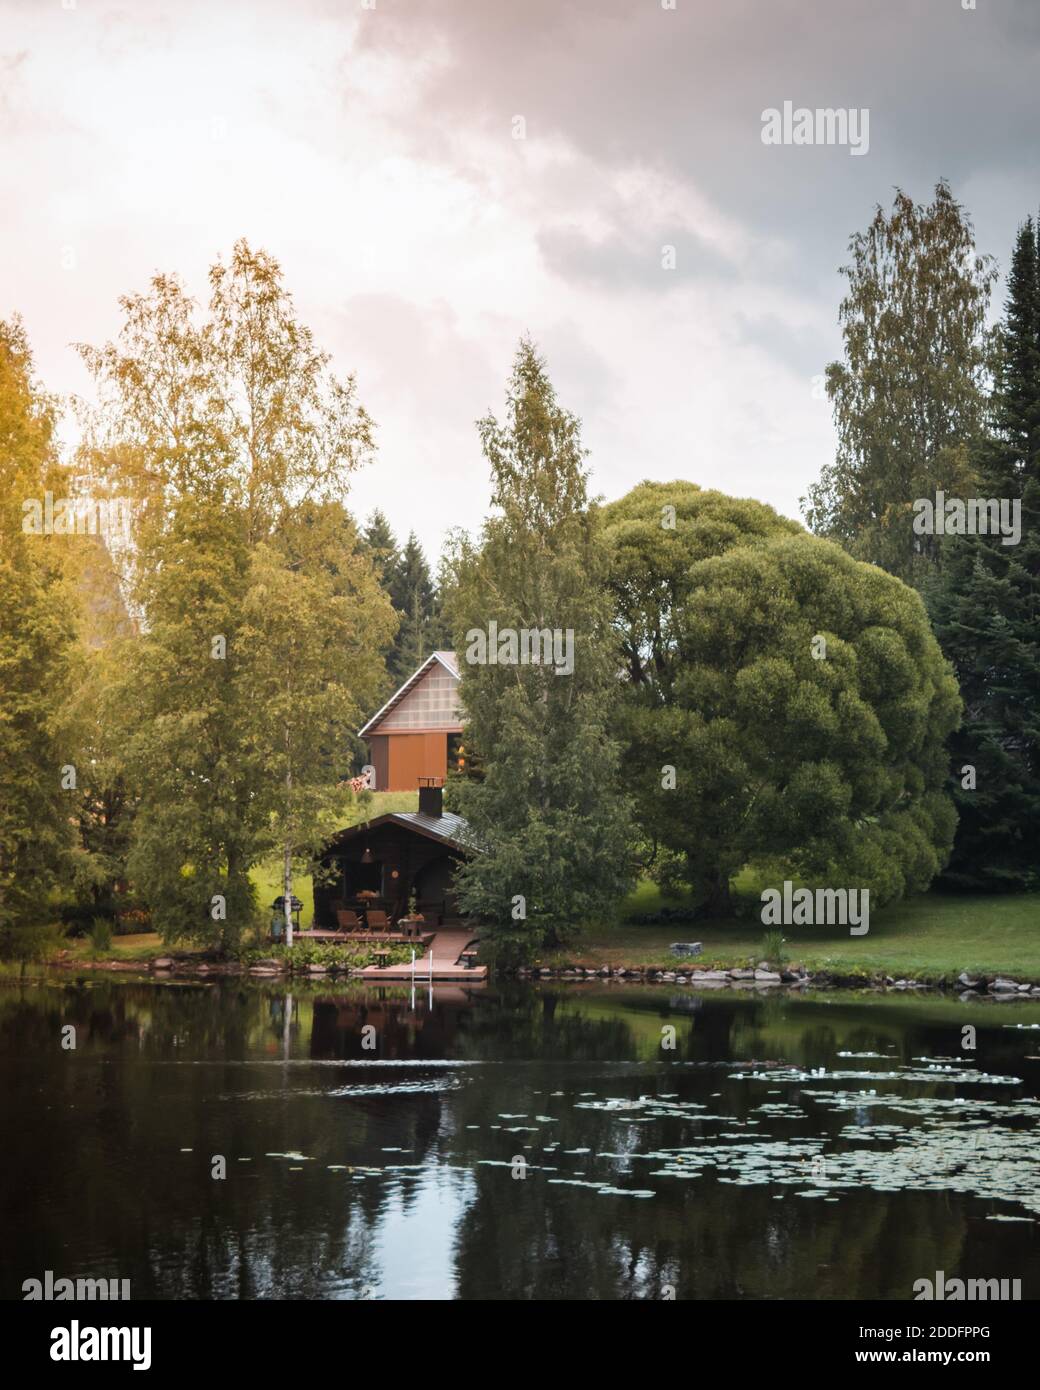 Un chalet paisible dans les bois finlandais avec la lumière du soleil Banque D'Images